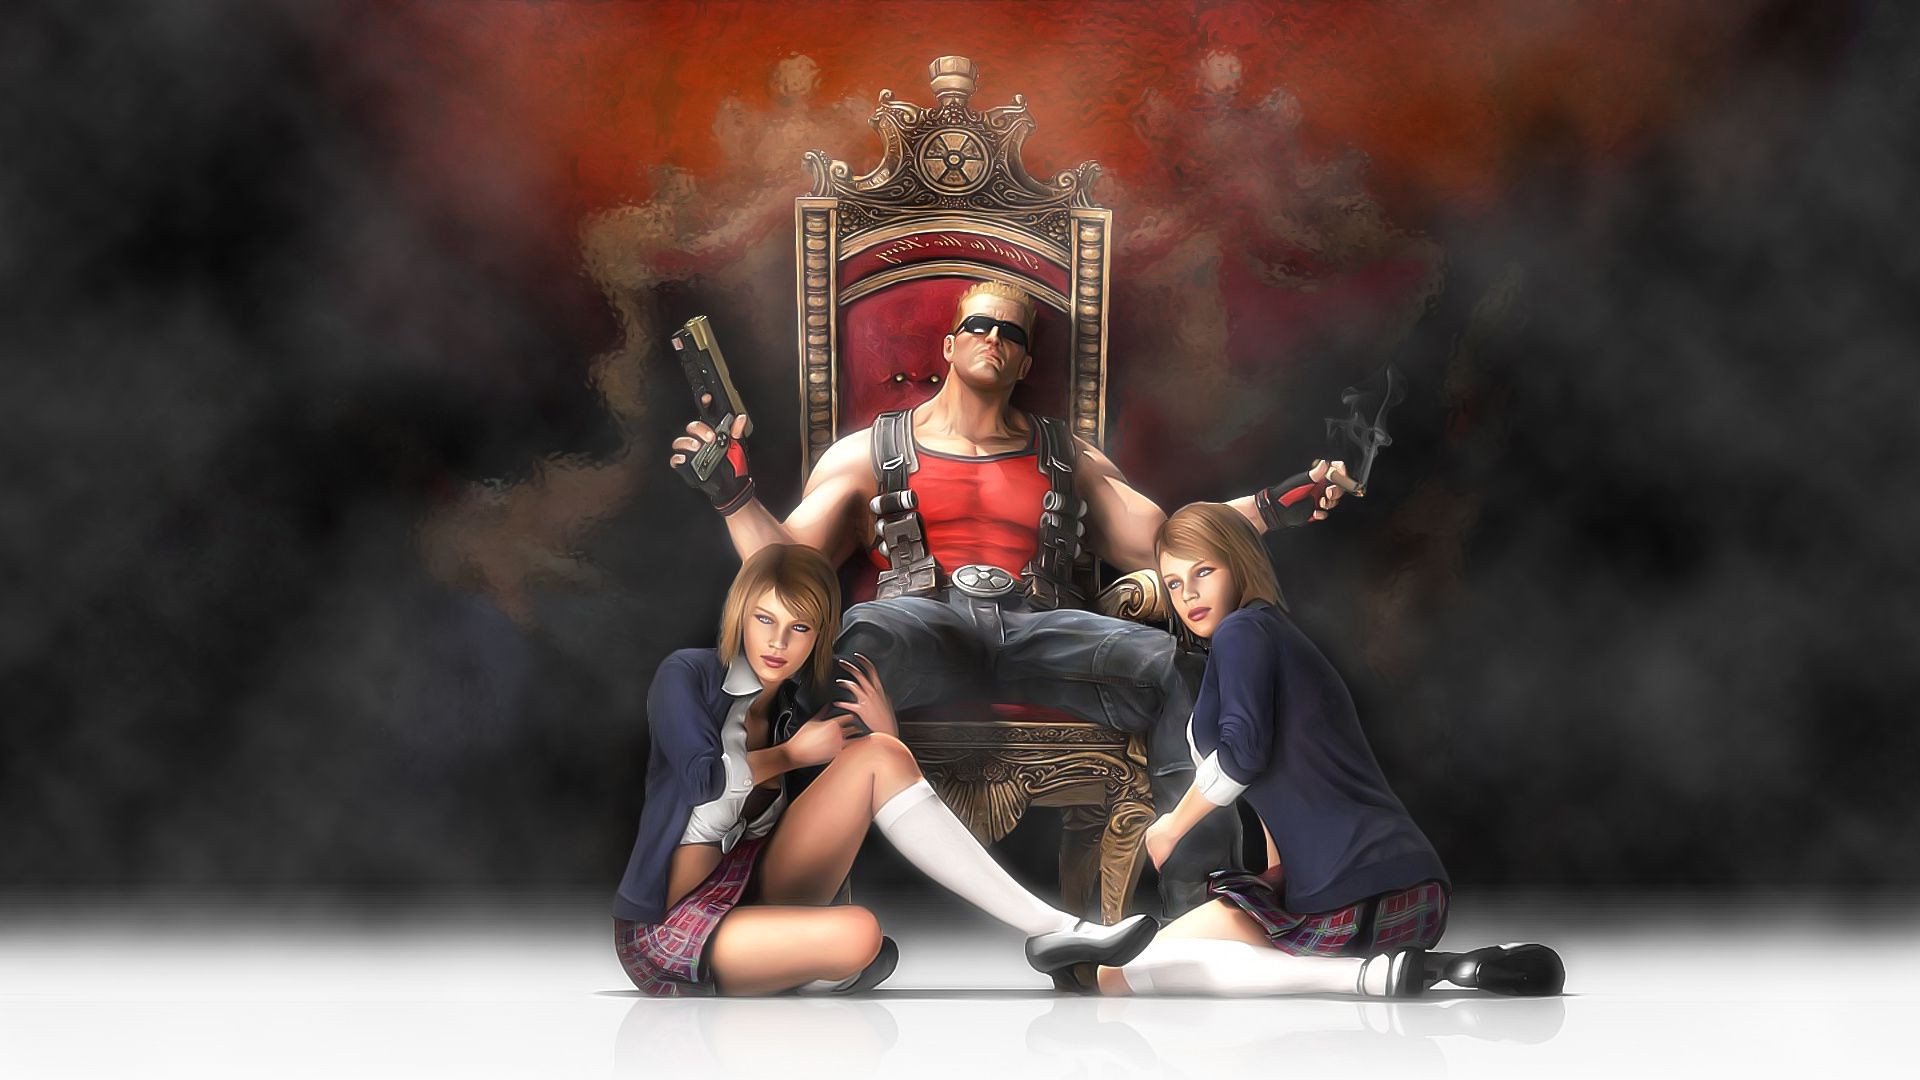 Duke Nukem With Girl , HD Wallpaper & Backgrounds